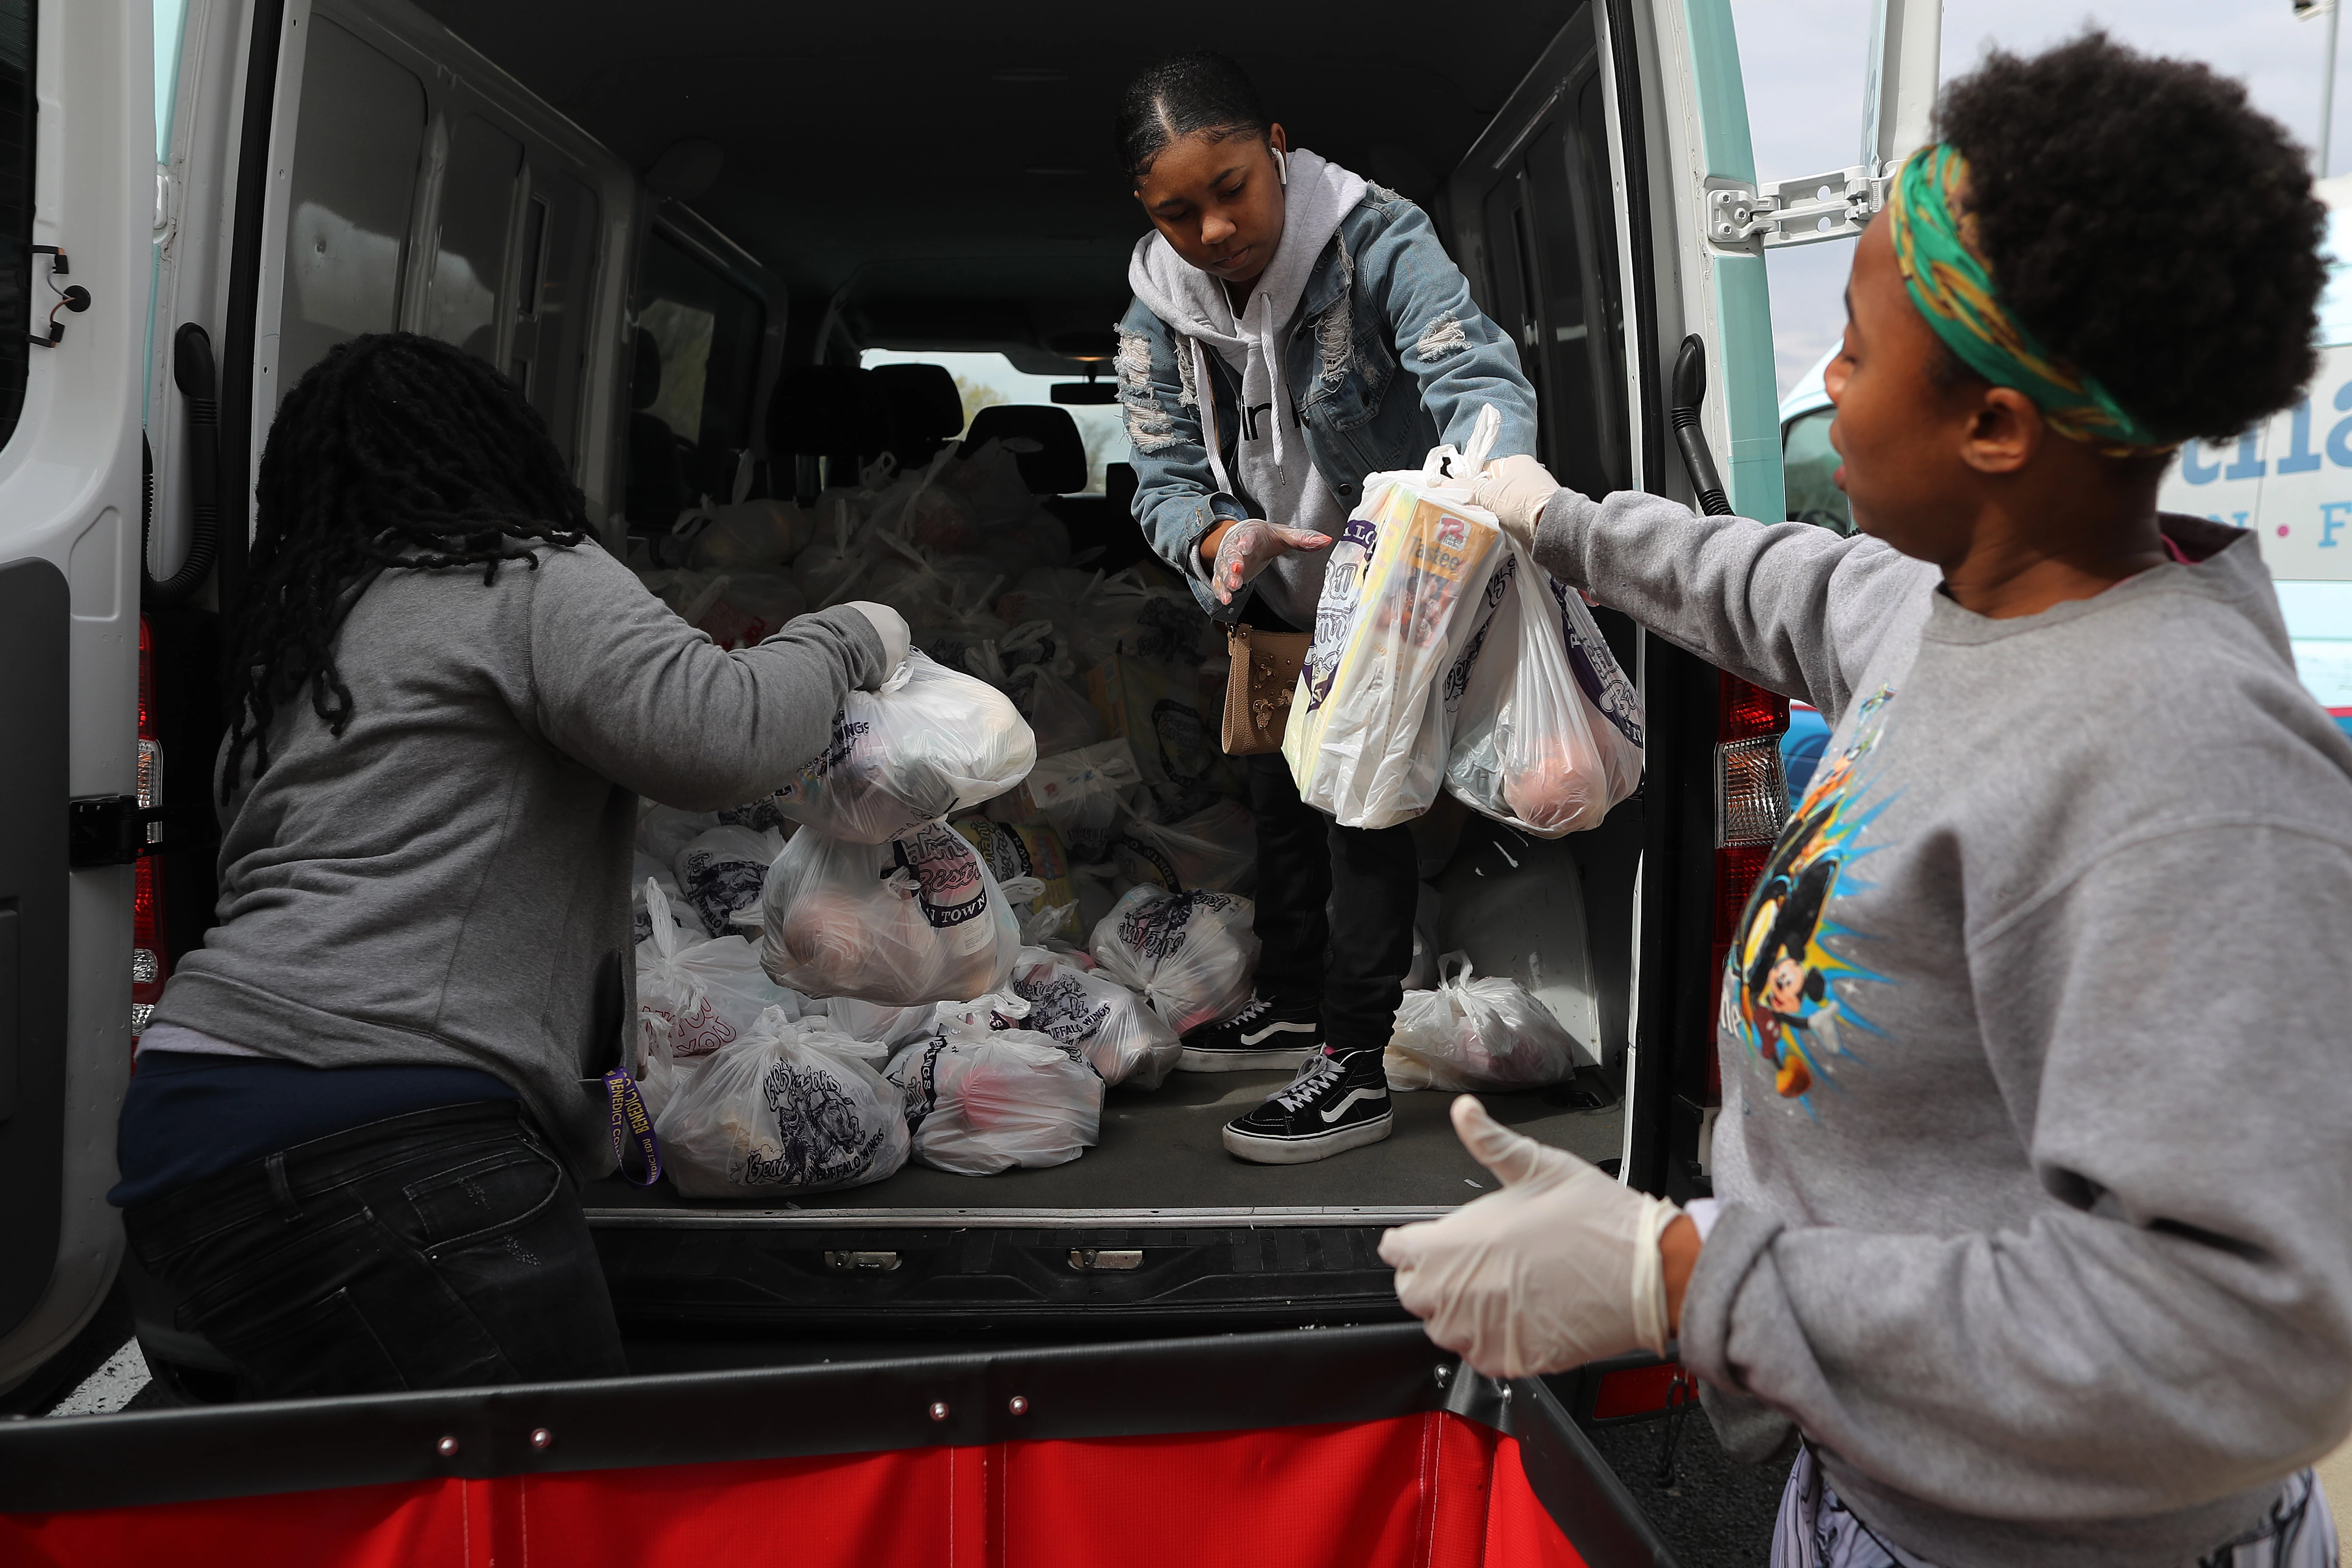 Voluntários da ONG Martha’s Table enchem sacolas com produtos frescos que serão distribuídos em comunidades carentes em meio à pandemia do coronavírus, em Washington, em 1º de abril de 2020.